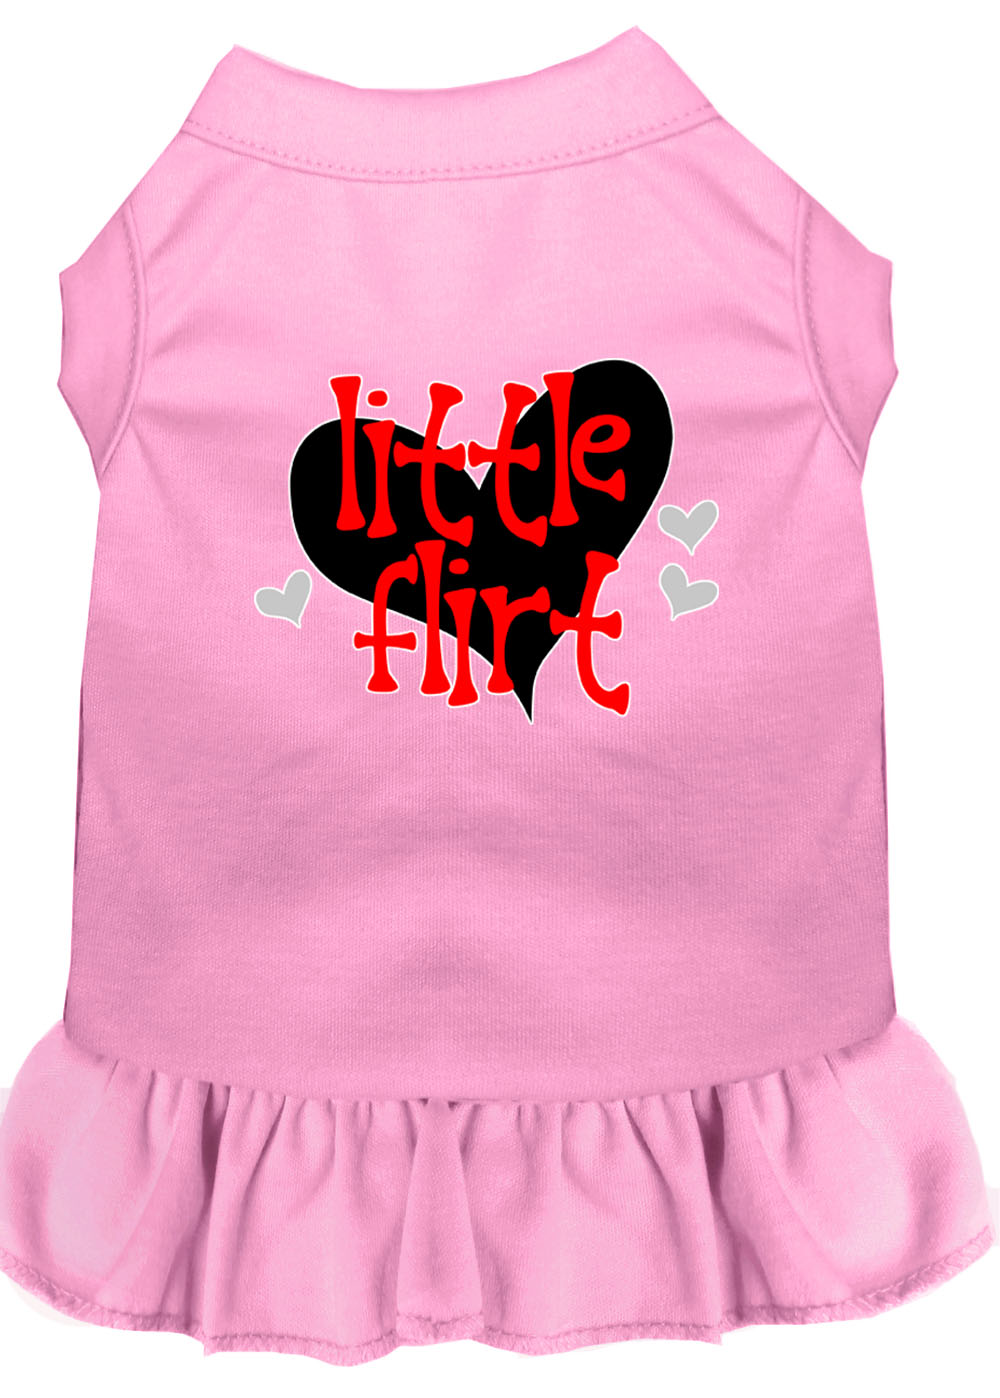 Little Flirt Screen Print Dog Dress Light Pink XL